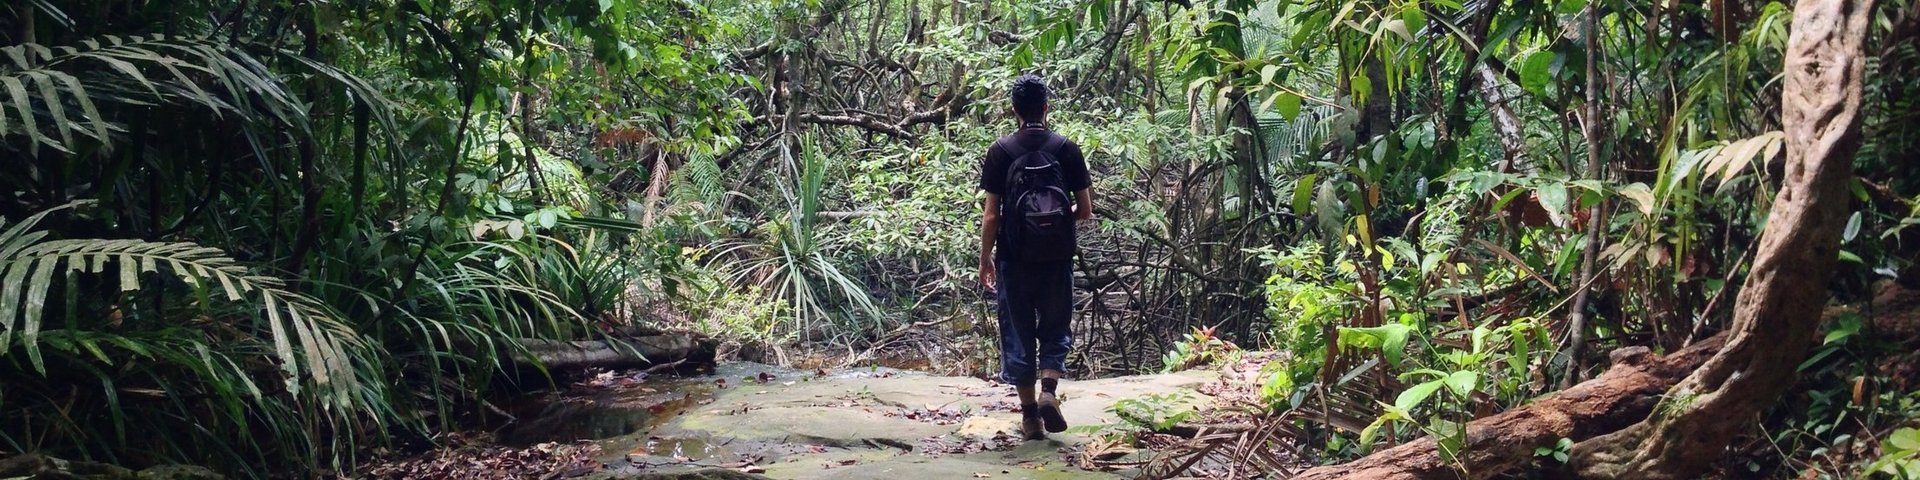 Wanderer unterwegs im Dschungel von Borneo